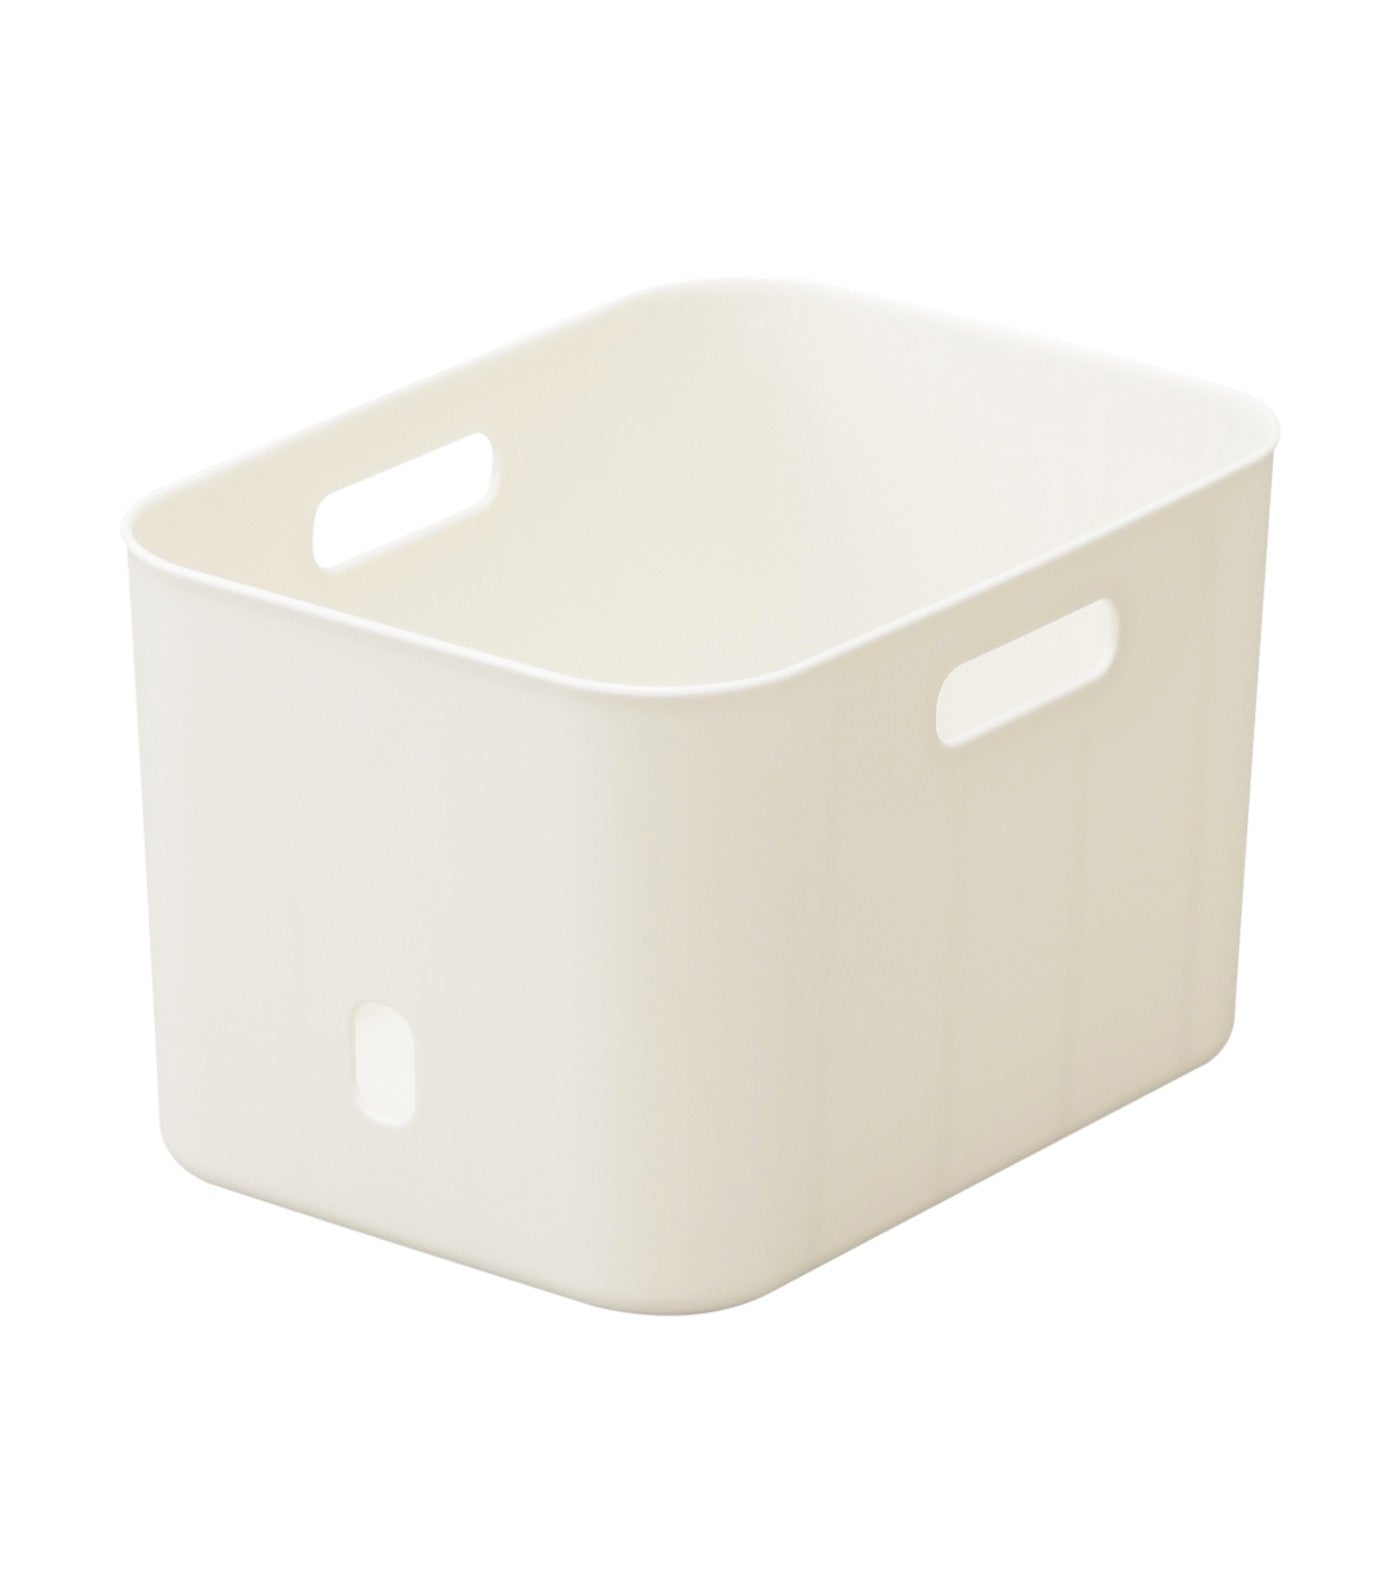 MakeRoom In Box Soft S - White